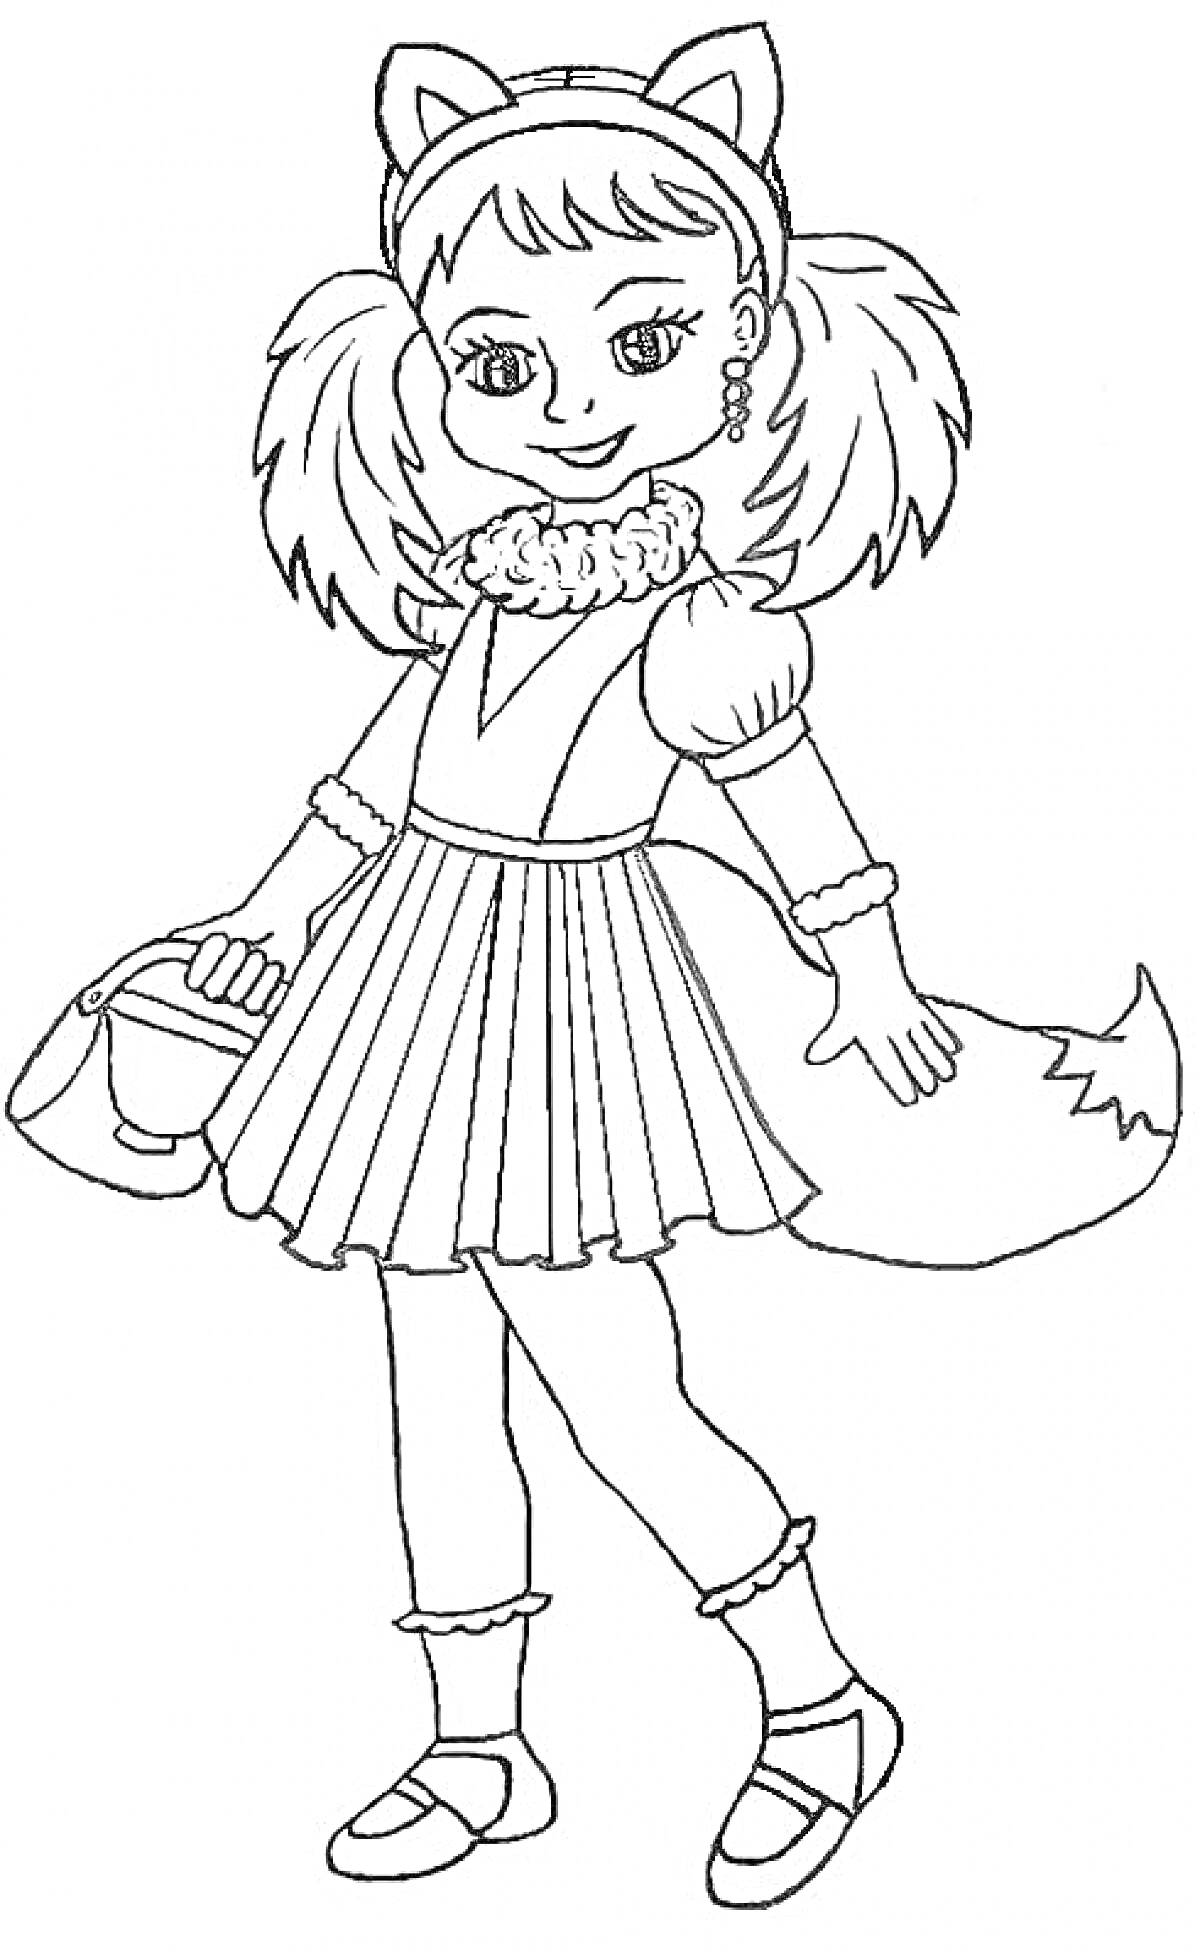 Раскраска Девочка в костюме лисички с обручем с ушками, юбкой, манжетами, хвостом и сумочкой